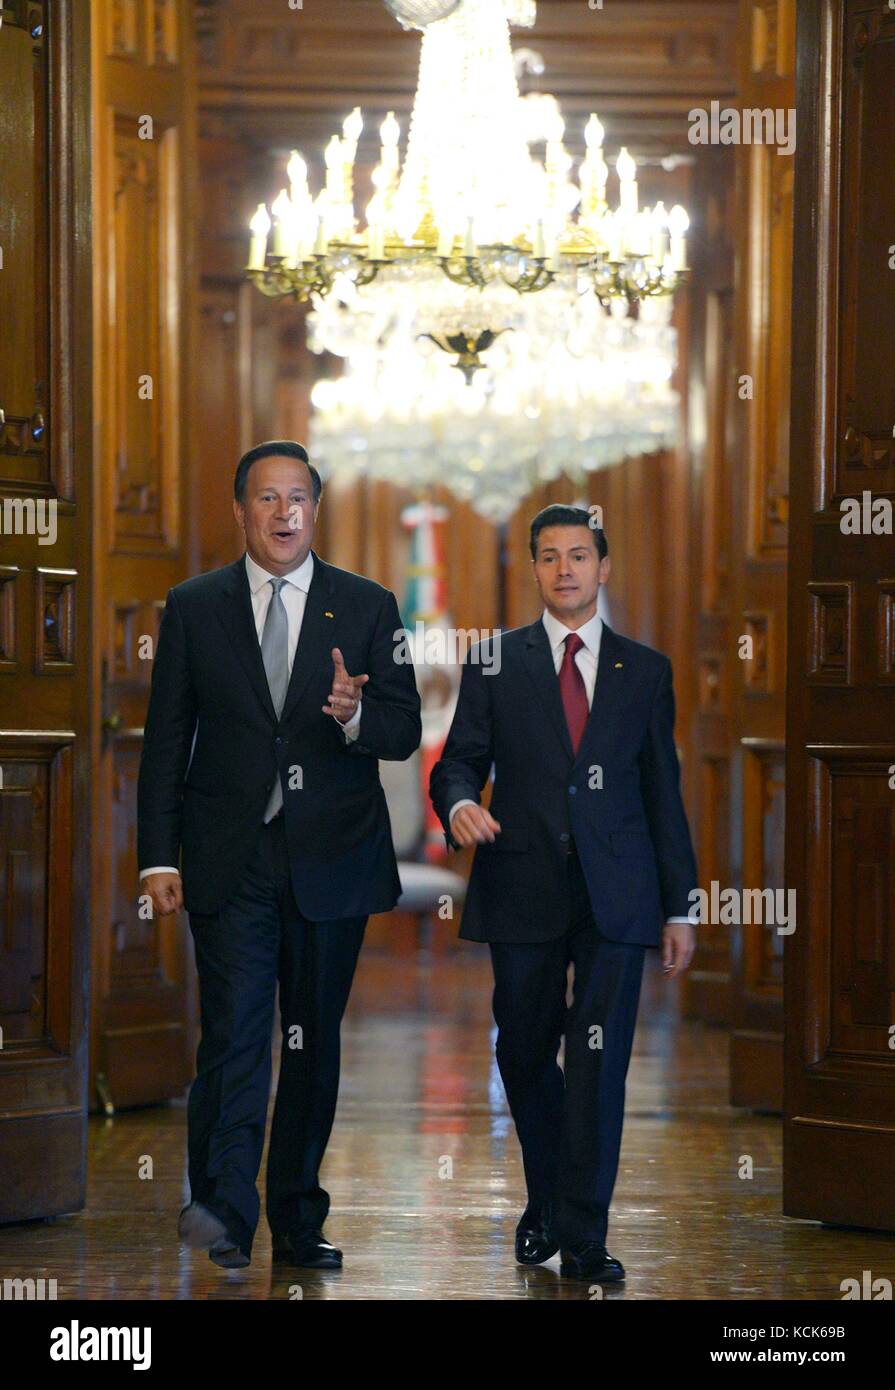 Le président panaméen juan Carlos Varela rodriguez (à gauche) rencontre le président mexicain Enrique pena nieto lors d'une visite au palais national le 14 novembre 2016 à Mexico, Mexique. (Photo par photo via la présidence mexicaine) planetpix Banque D'Images